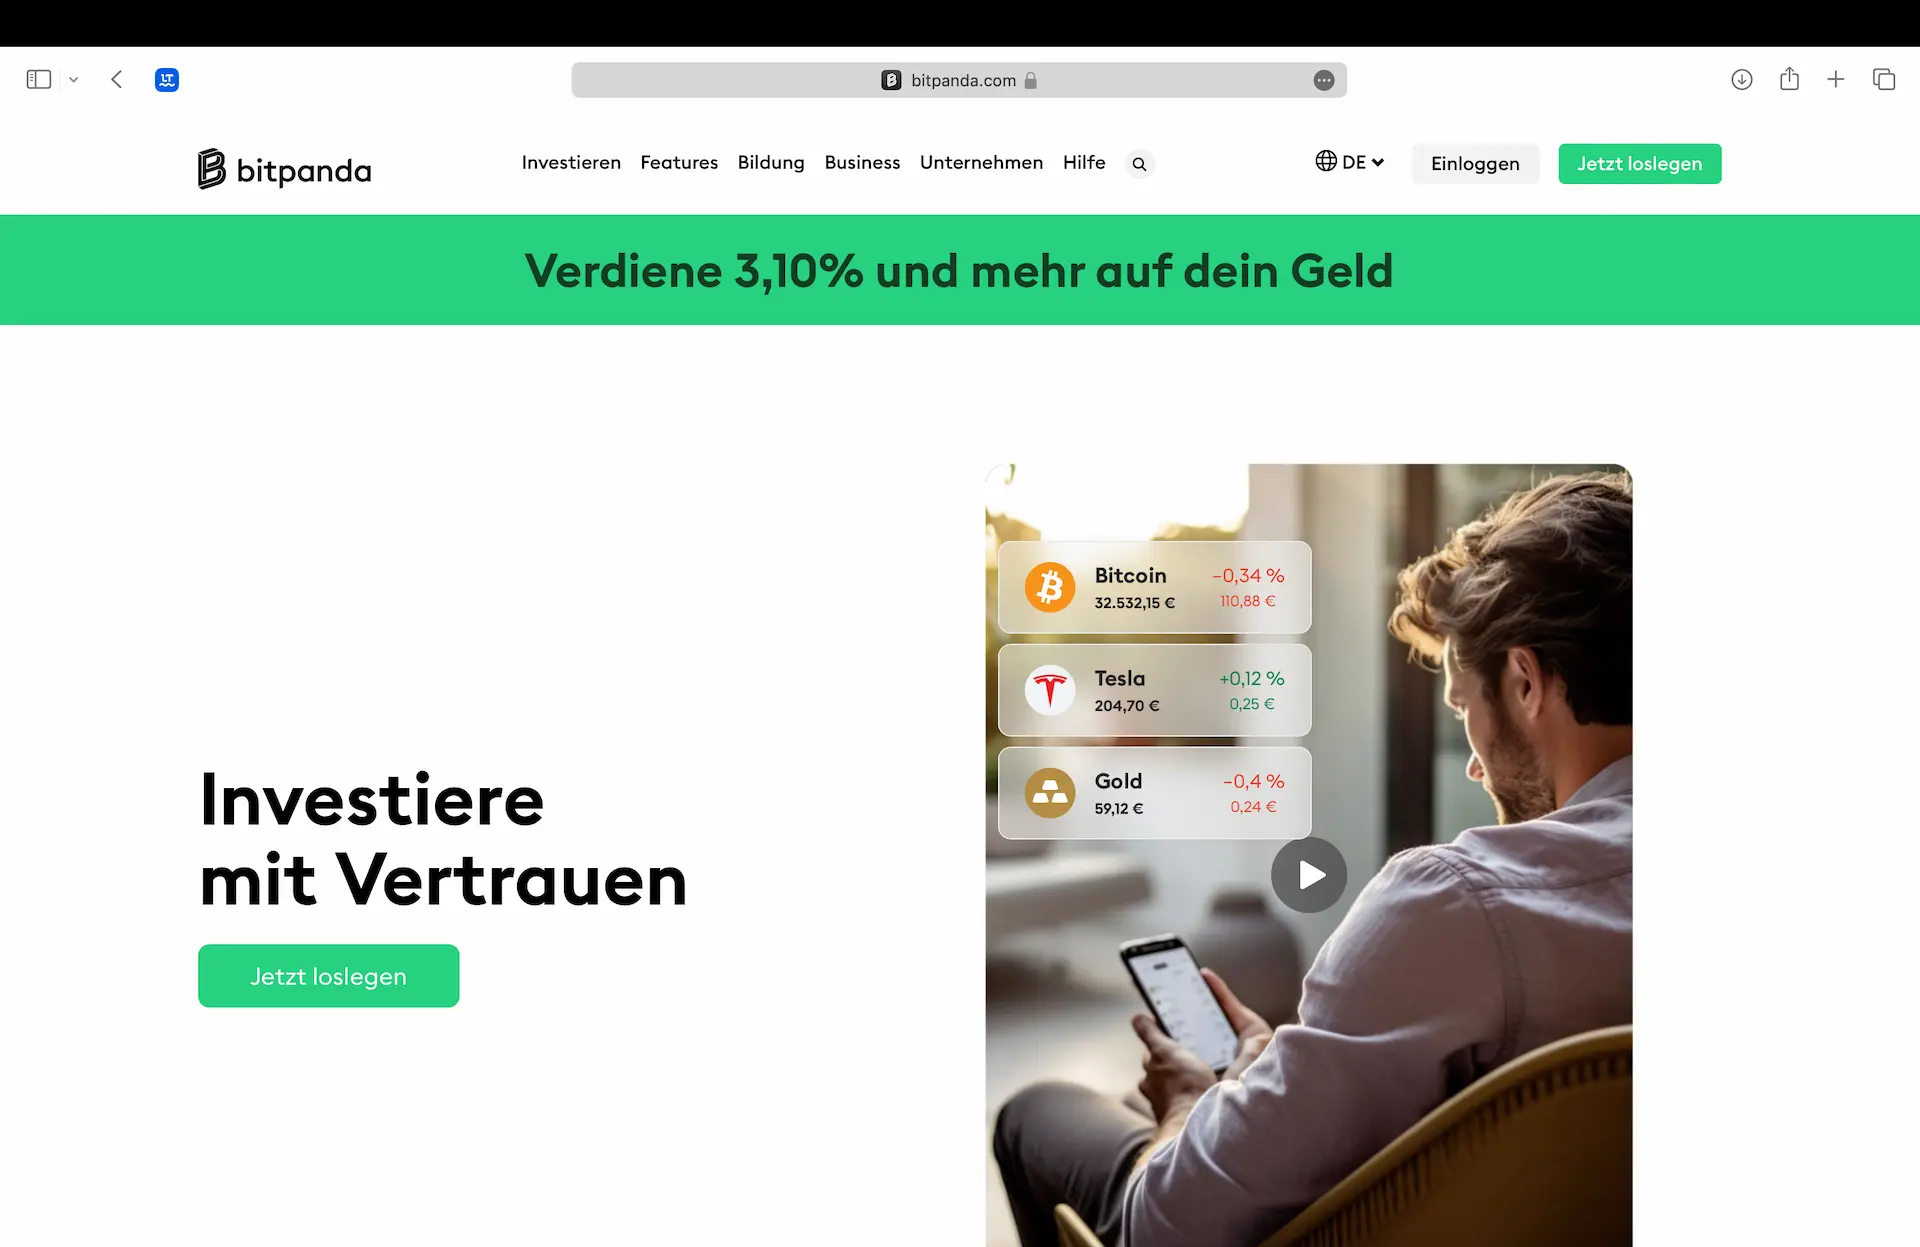 Startseite der Krypto-Börse Bitpanda aus Österreich